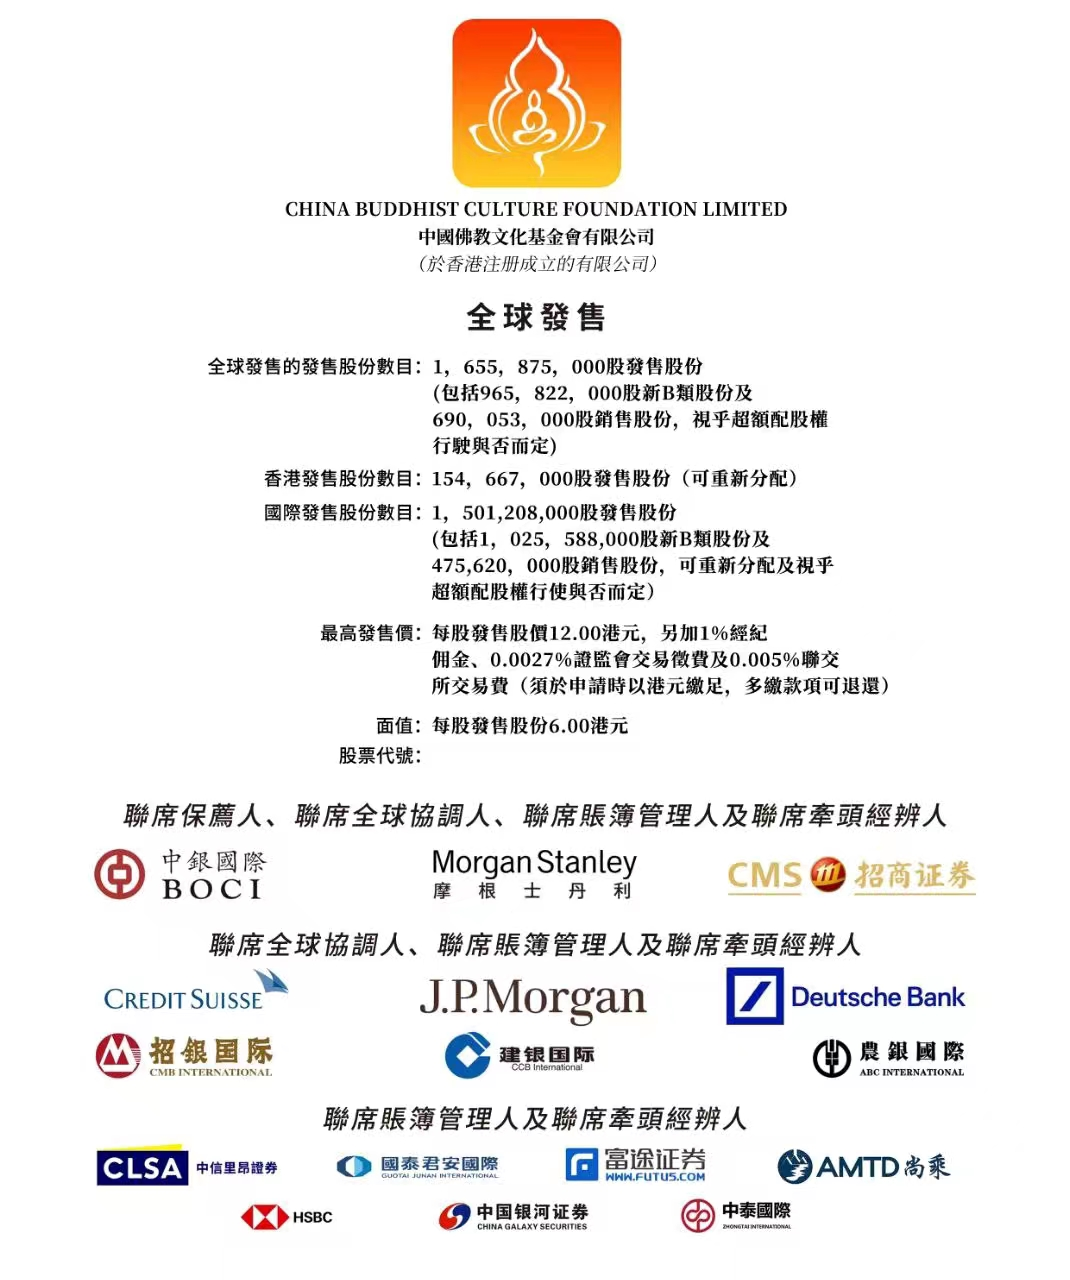 中国佛教文化基金会有限公司在港交所提交上市申请